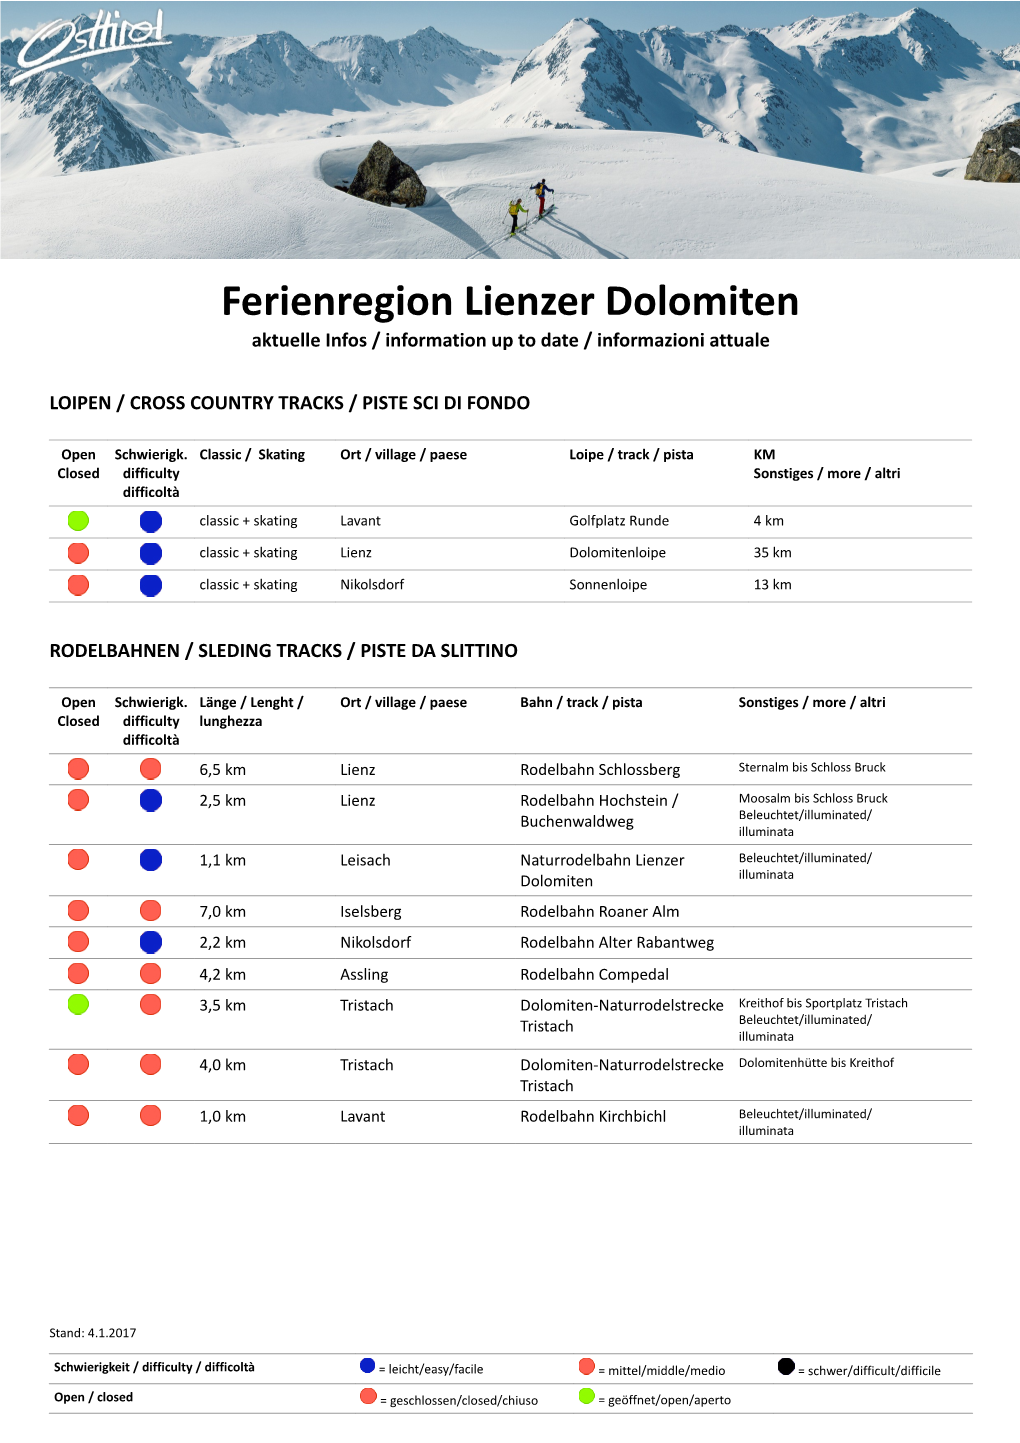 Ferienregion Lienzer Dolomiten Aktuelle Infos / Information up to Date / Informazioni Attuale